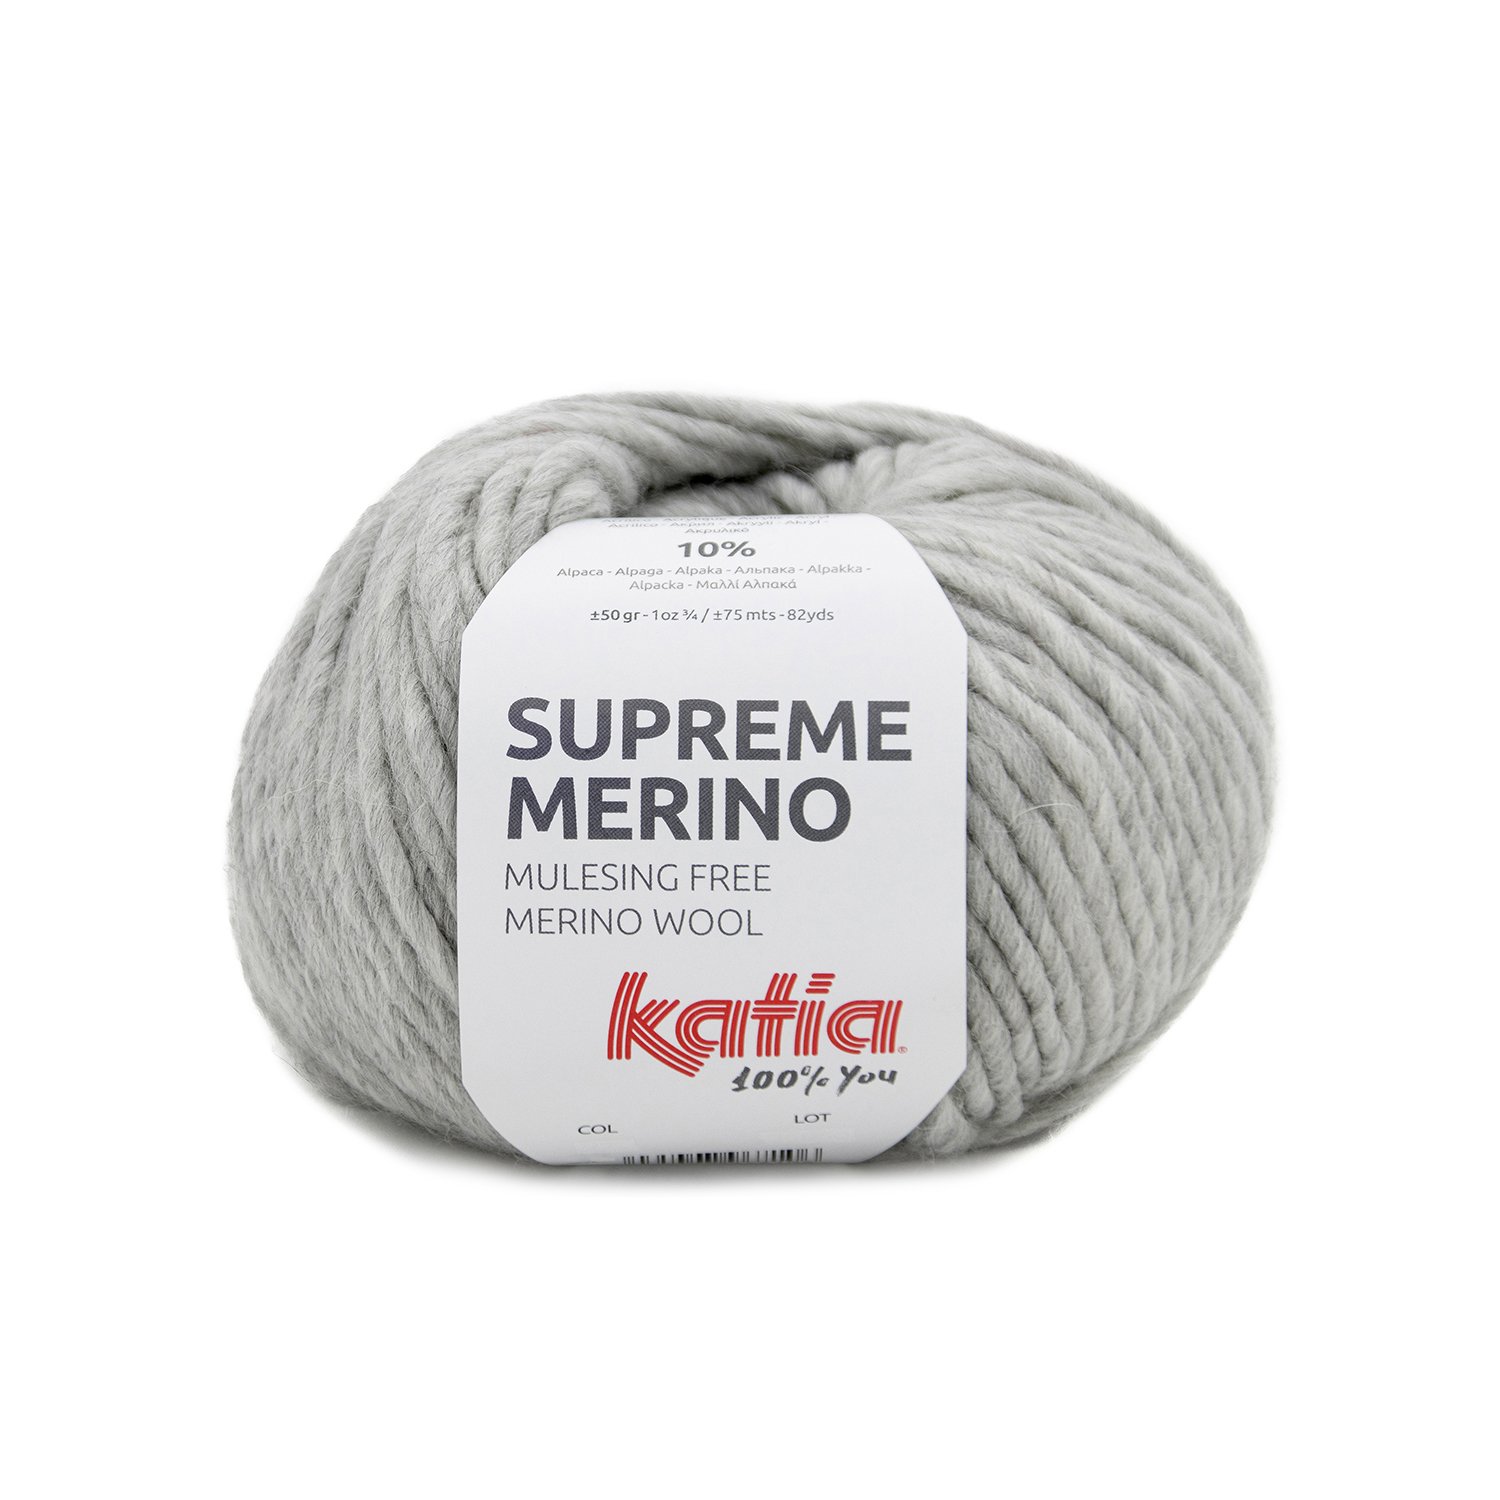 82 laine-fil-suprememerino-tricoter-acrylique-merino-alpaga-superfin-gris-clair-automne-hiver-katia-82-fhd